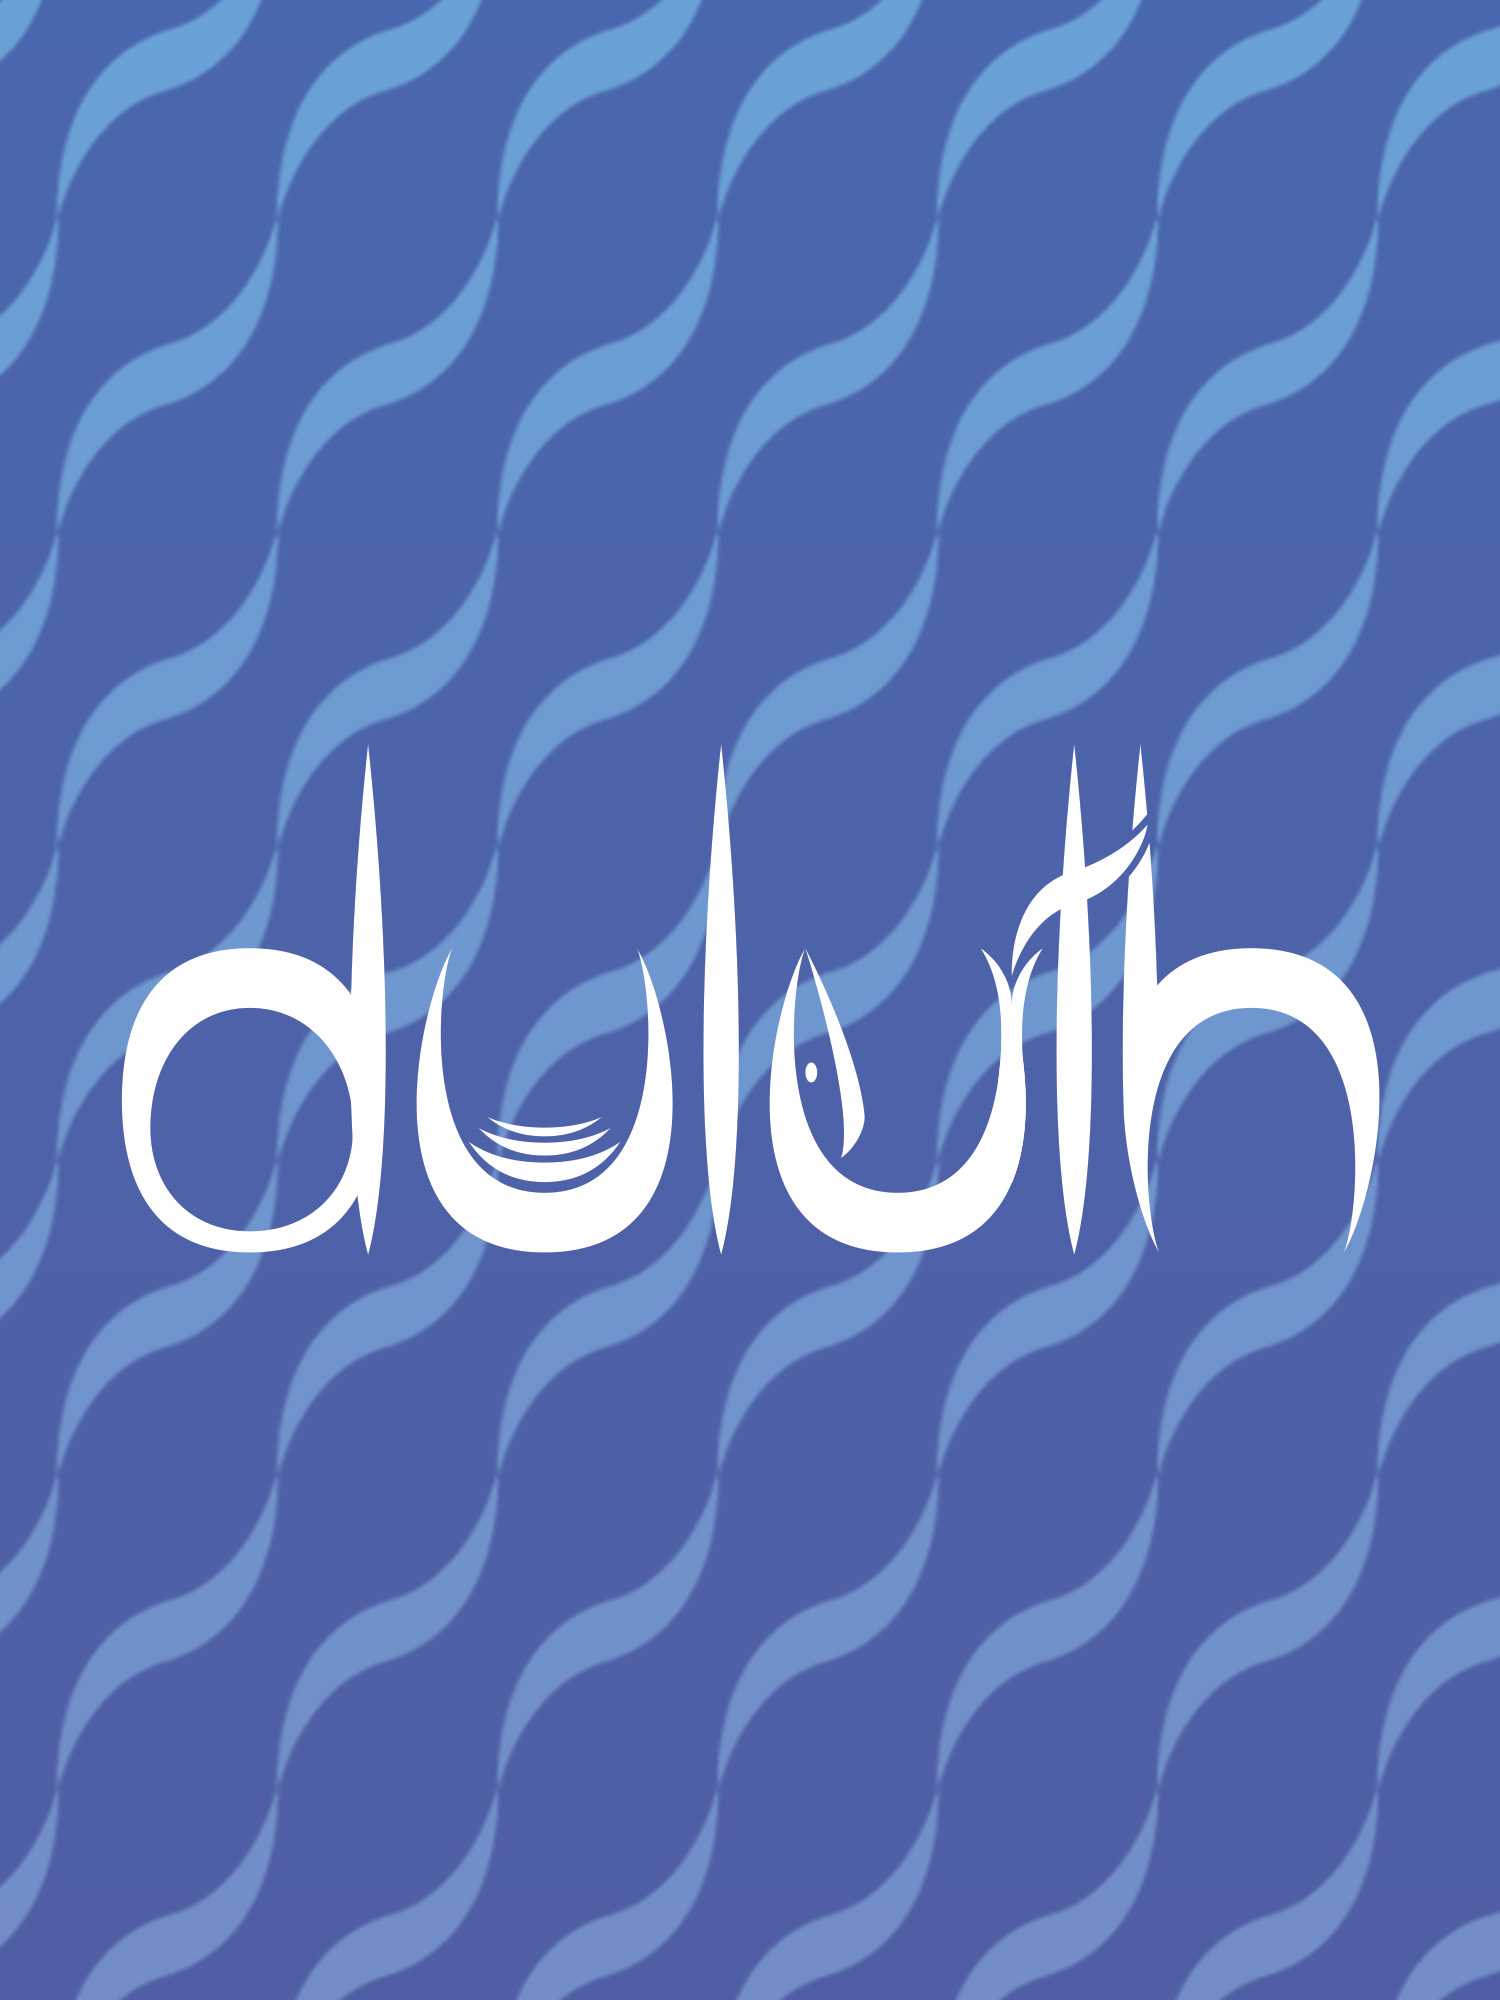 Duluth Rebranding